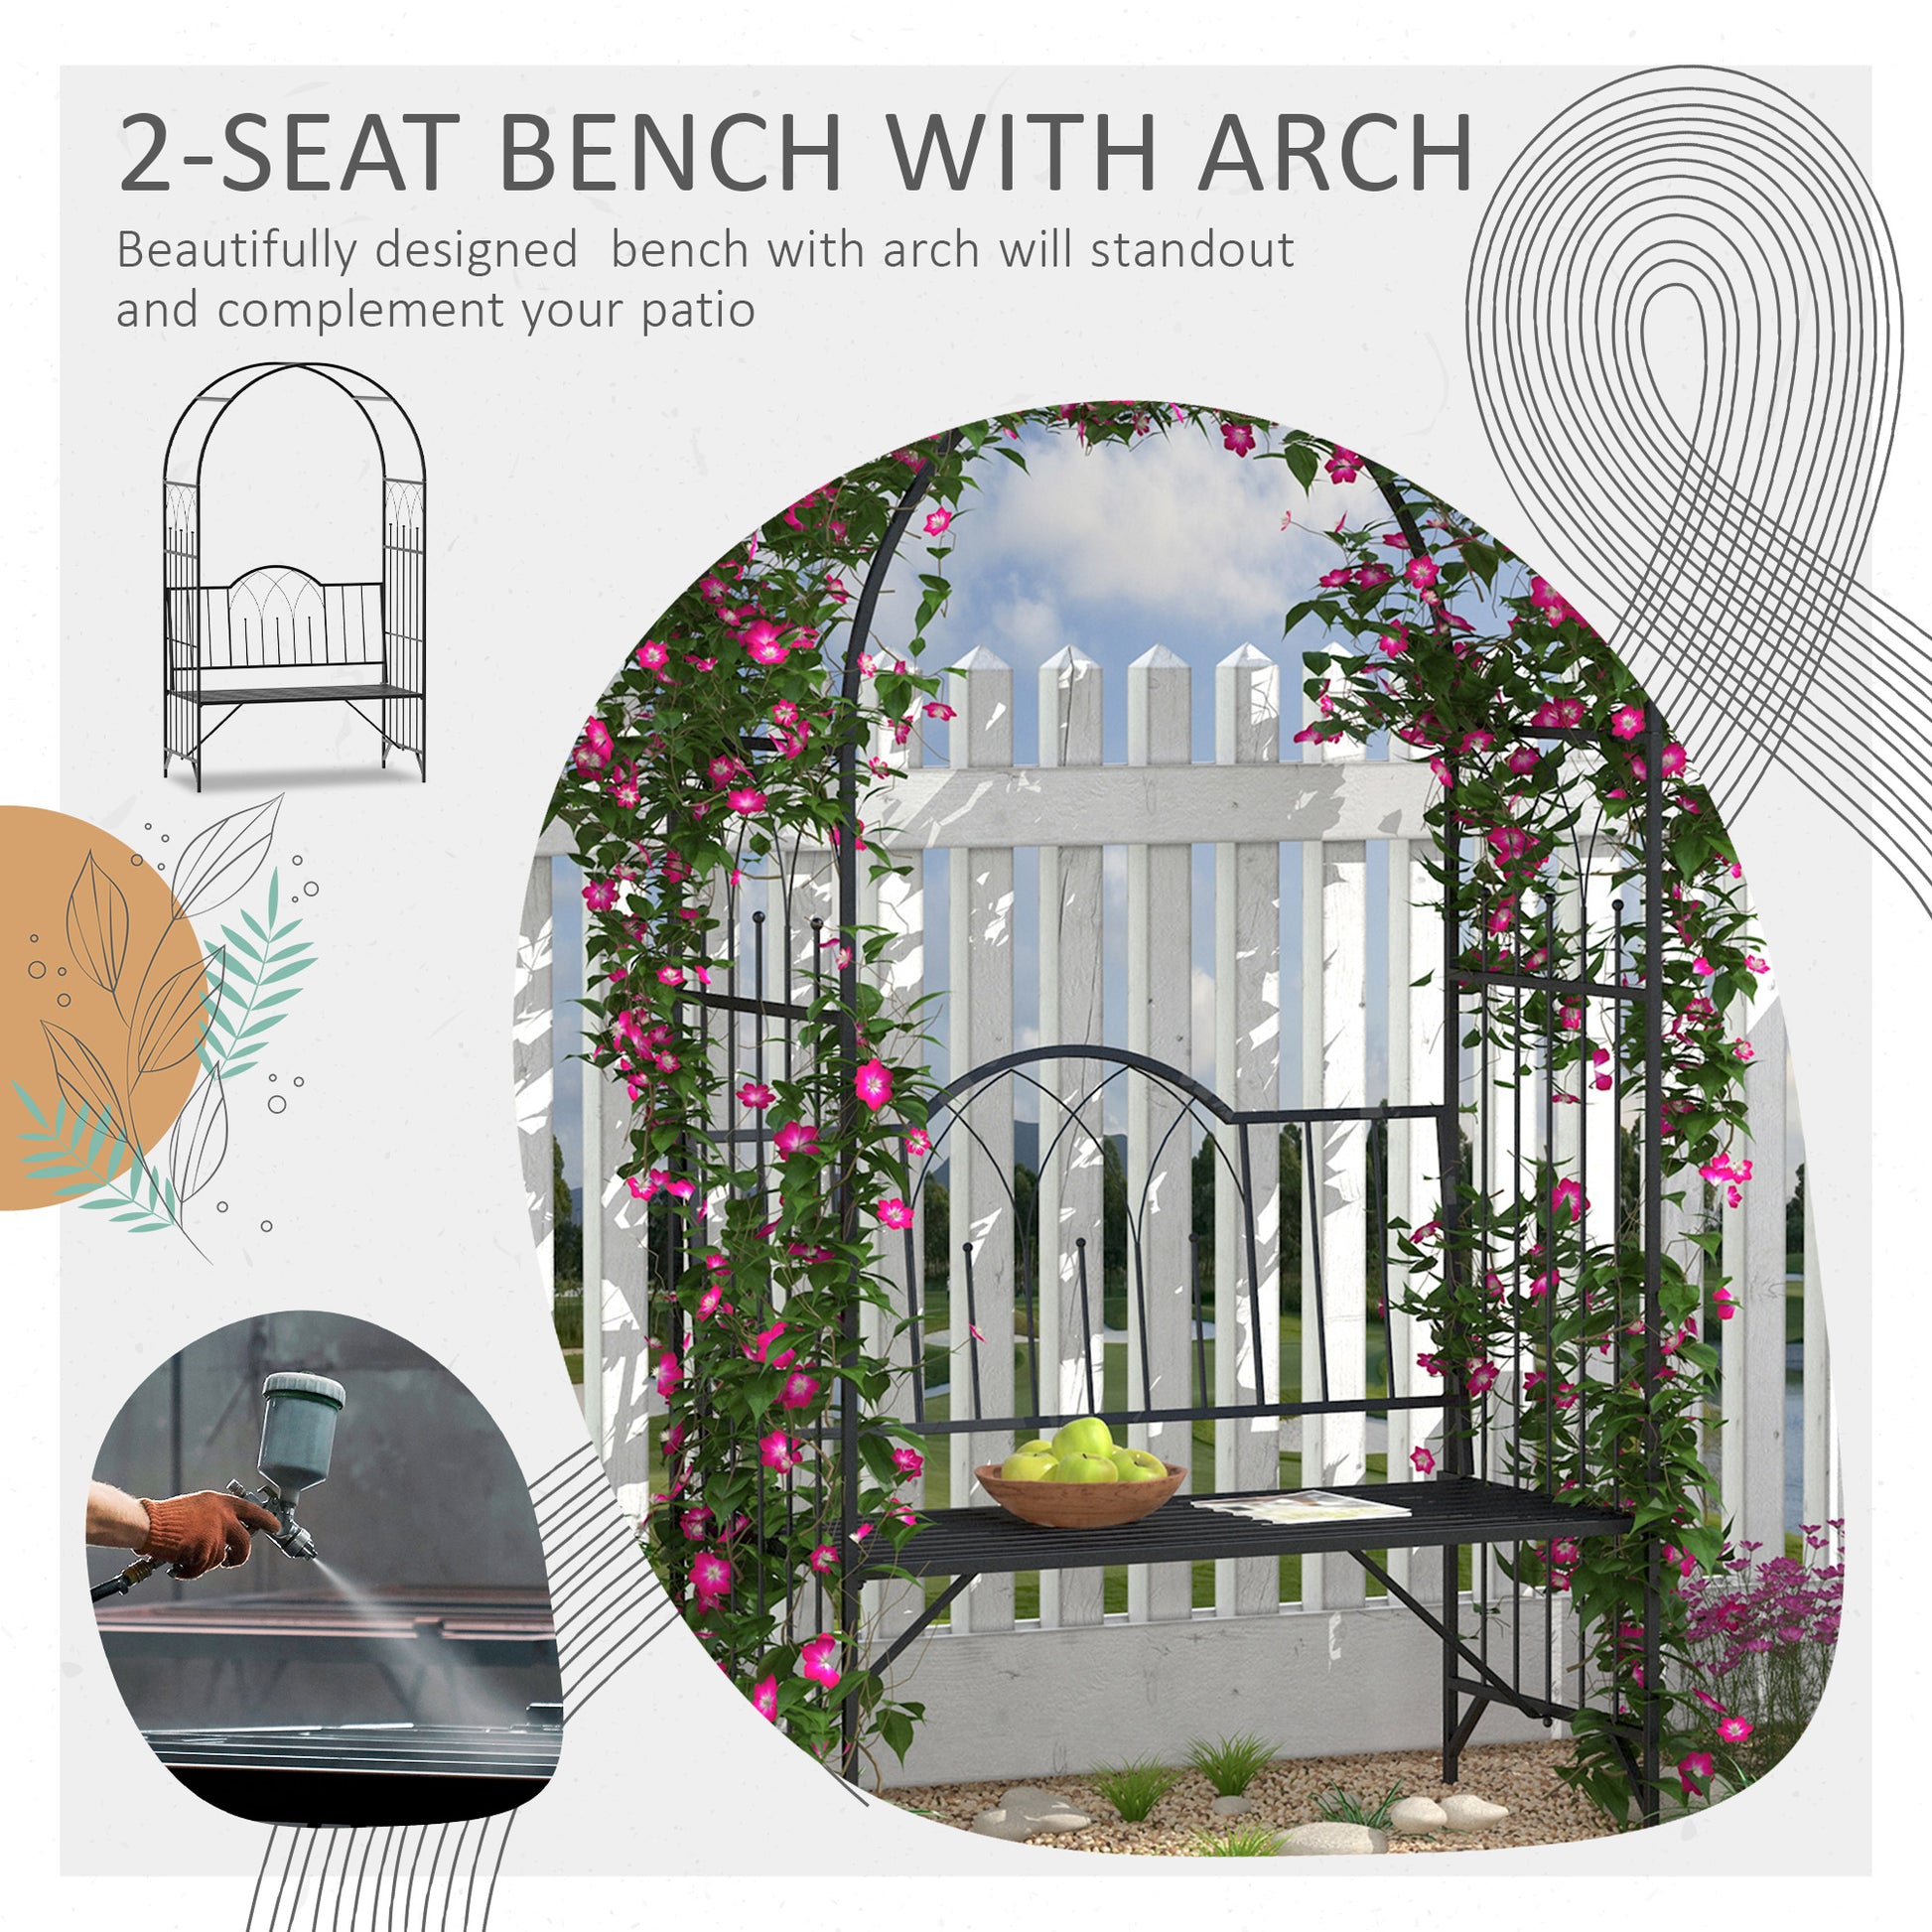 43" Garden Arbor Bench Trellis for Vines Climbing Plant Outdoor Decor Arch- Black at Gallery Canada